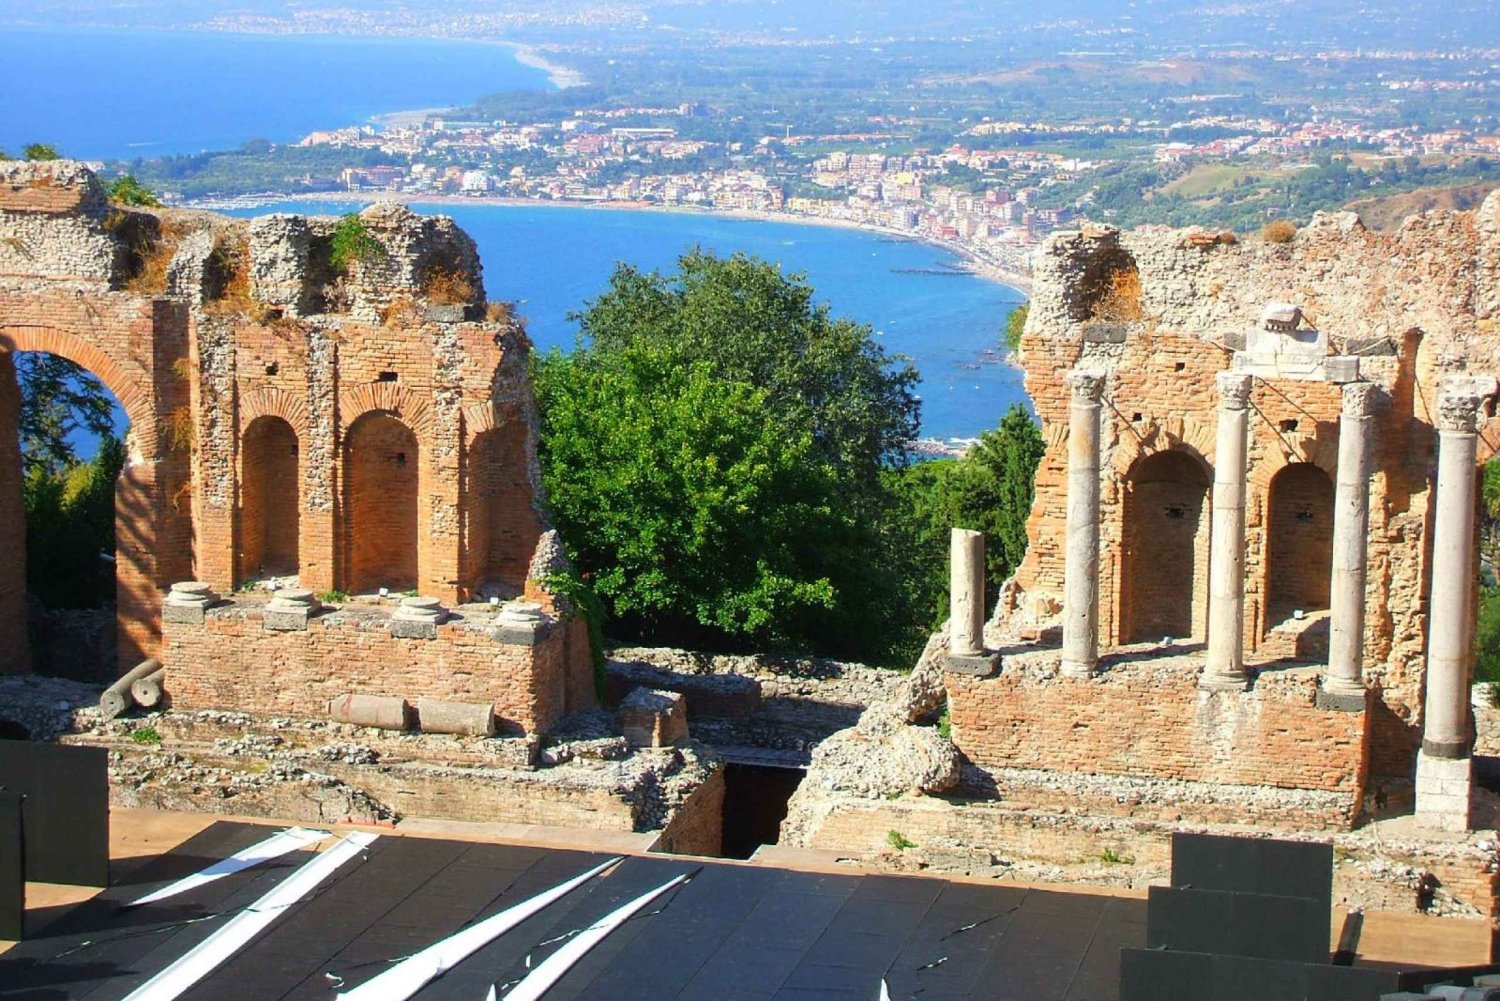 Taormine : visite guidée de la ville historique